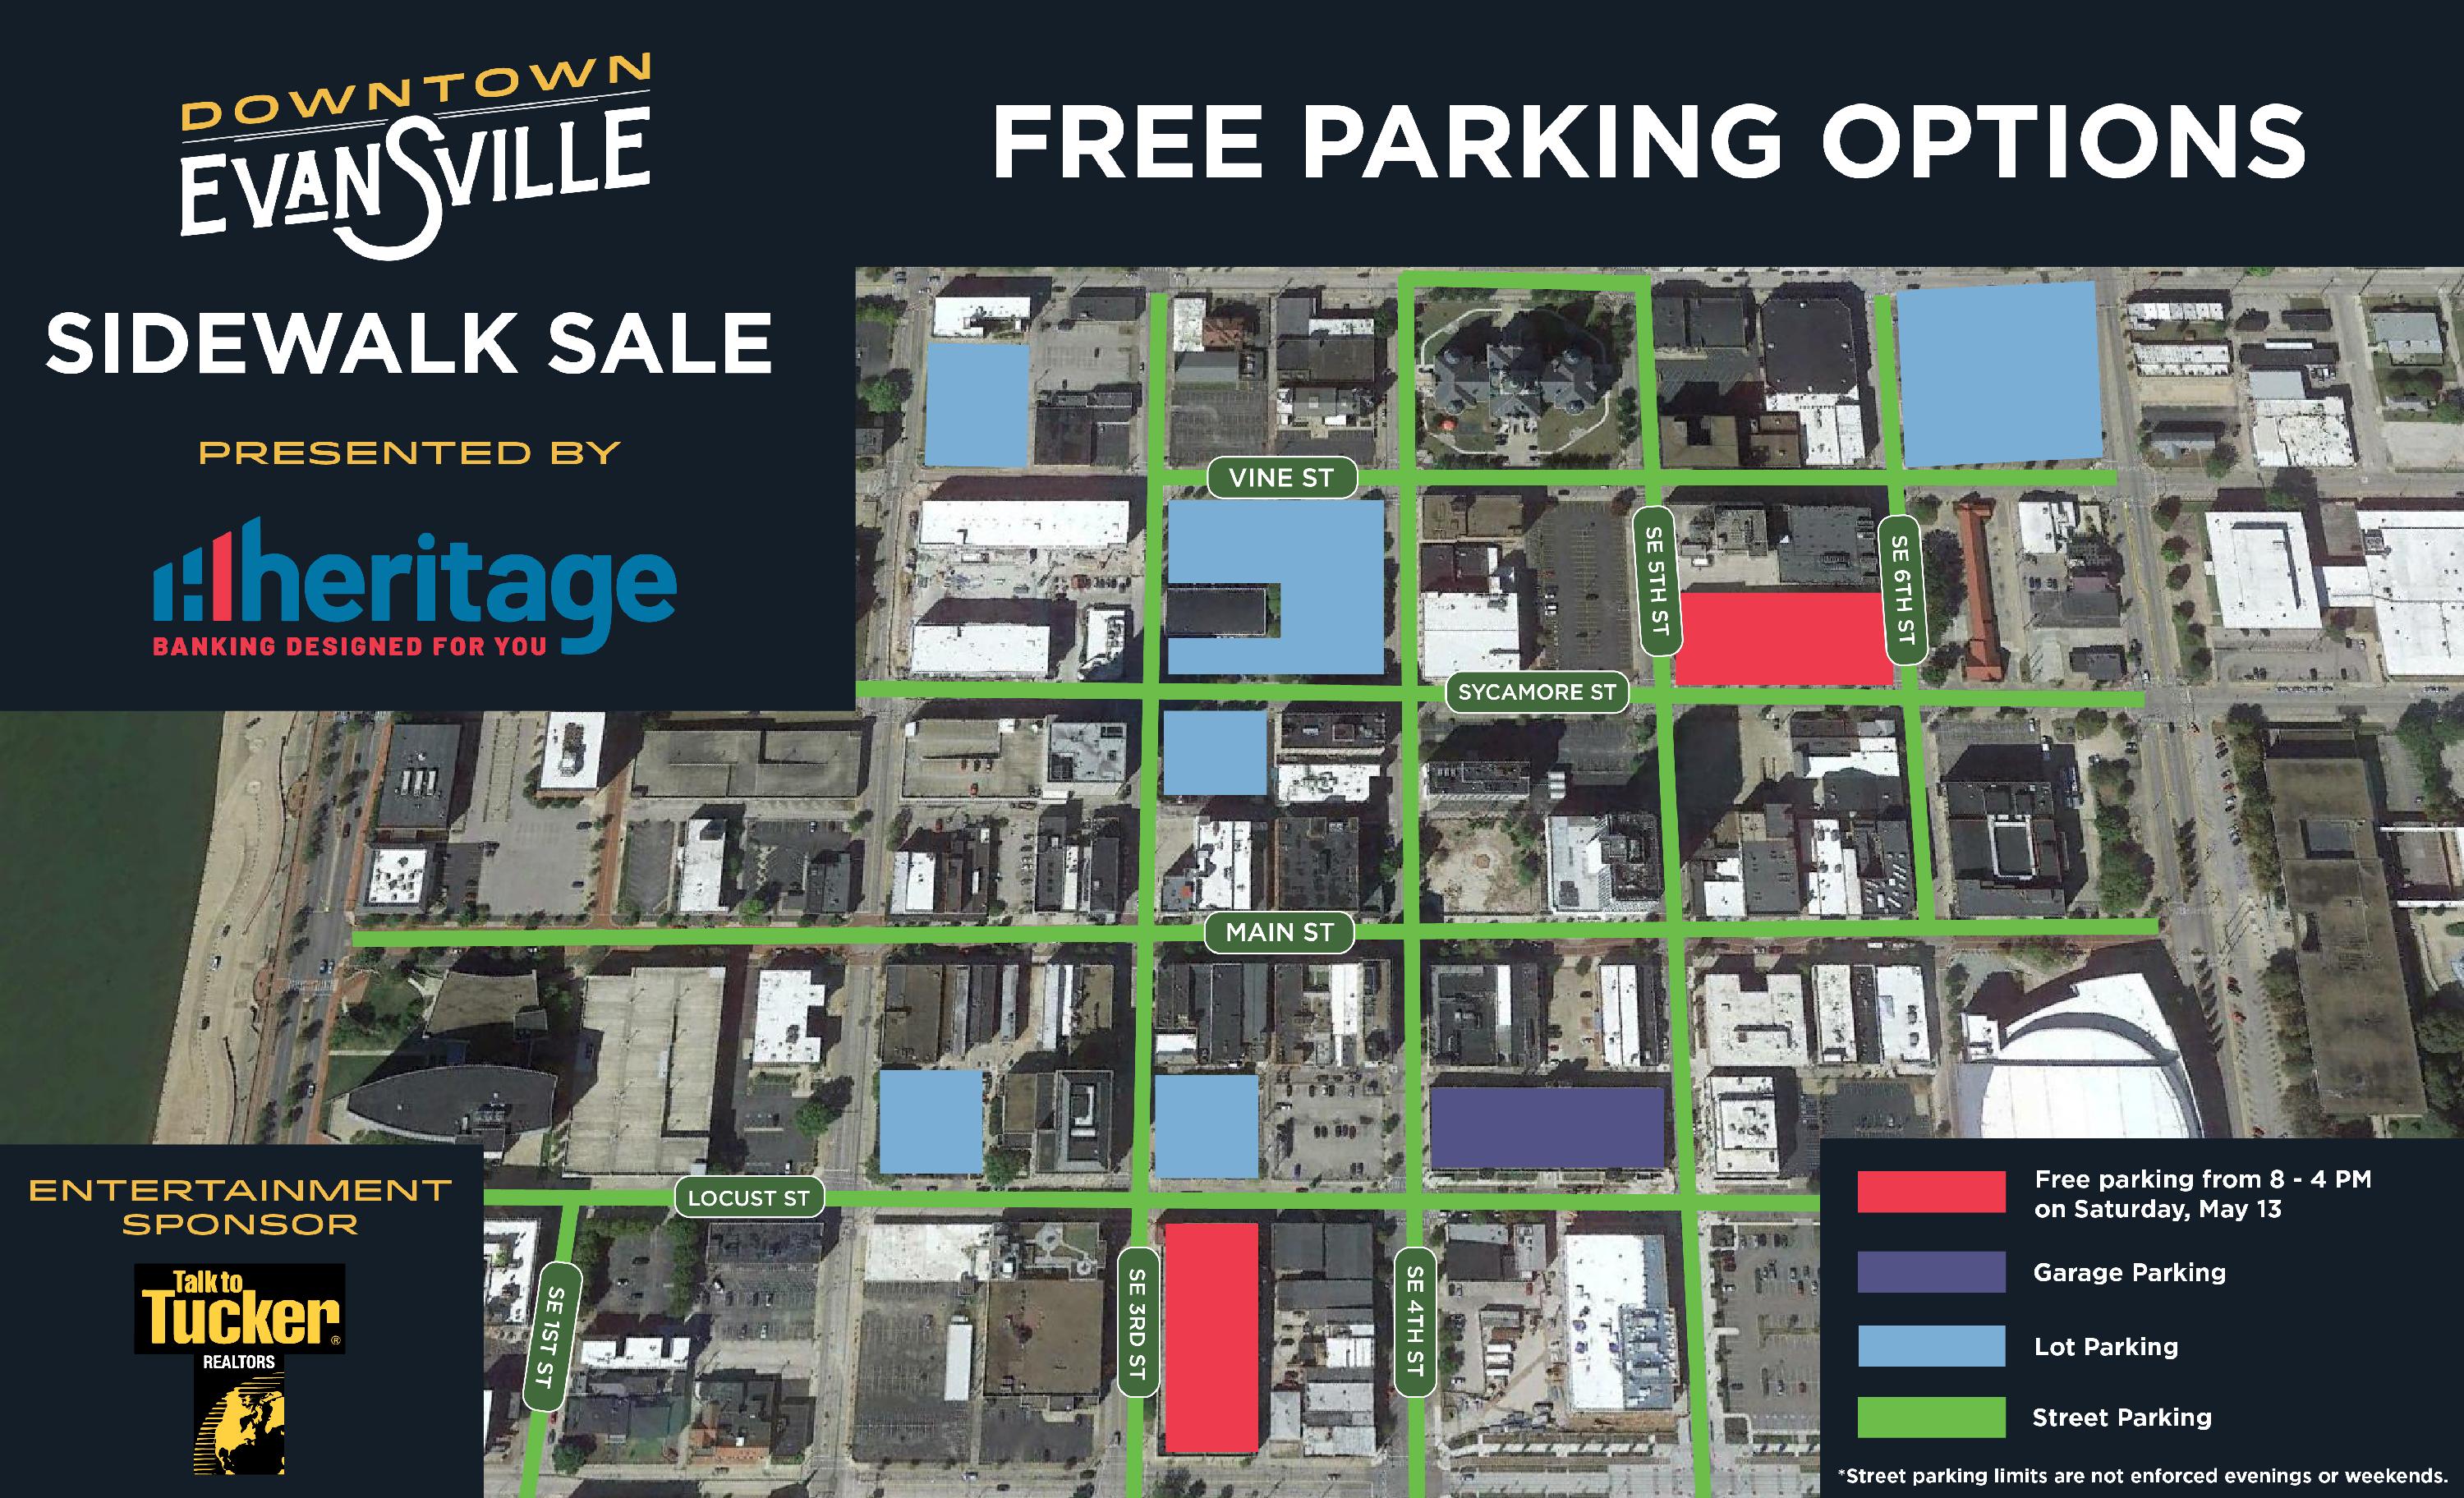 Sidewalk Sale free parking graphic